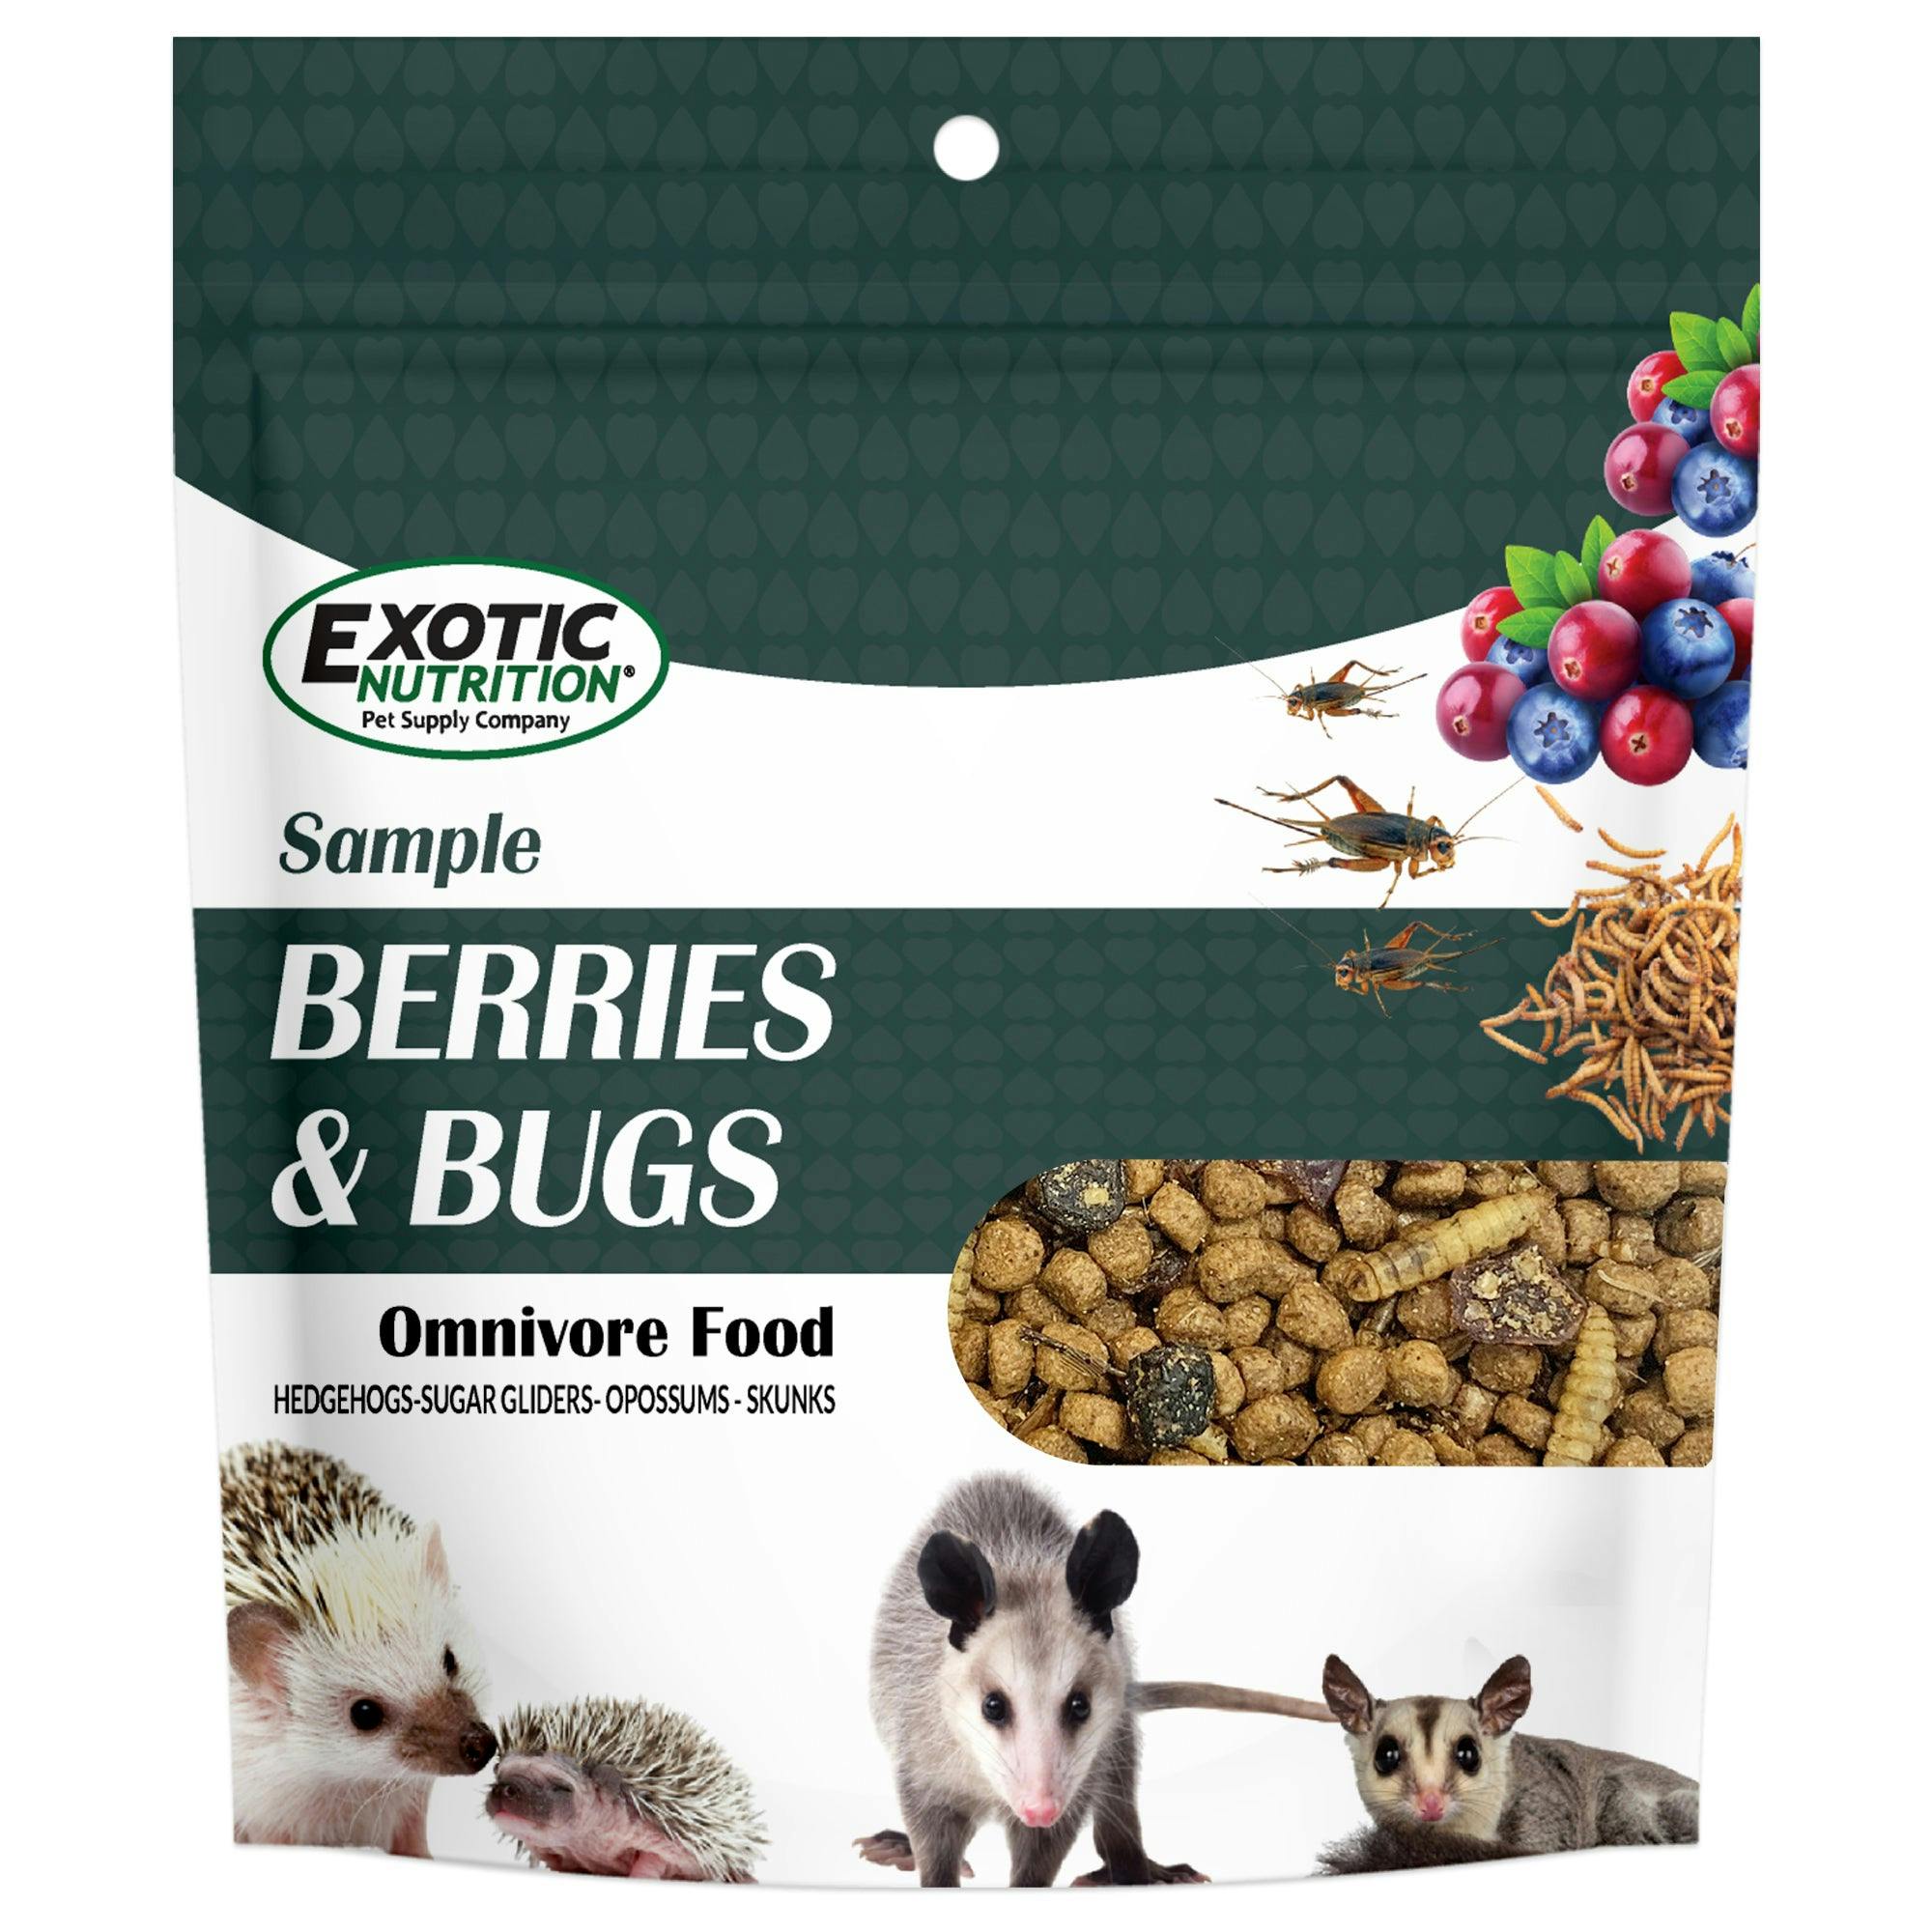 Berries & Bugs - Image 0